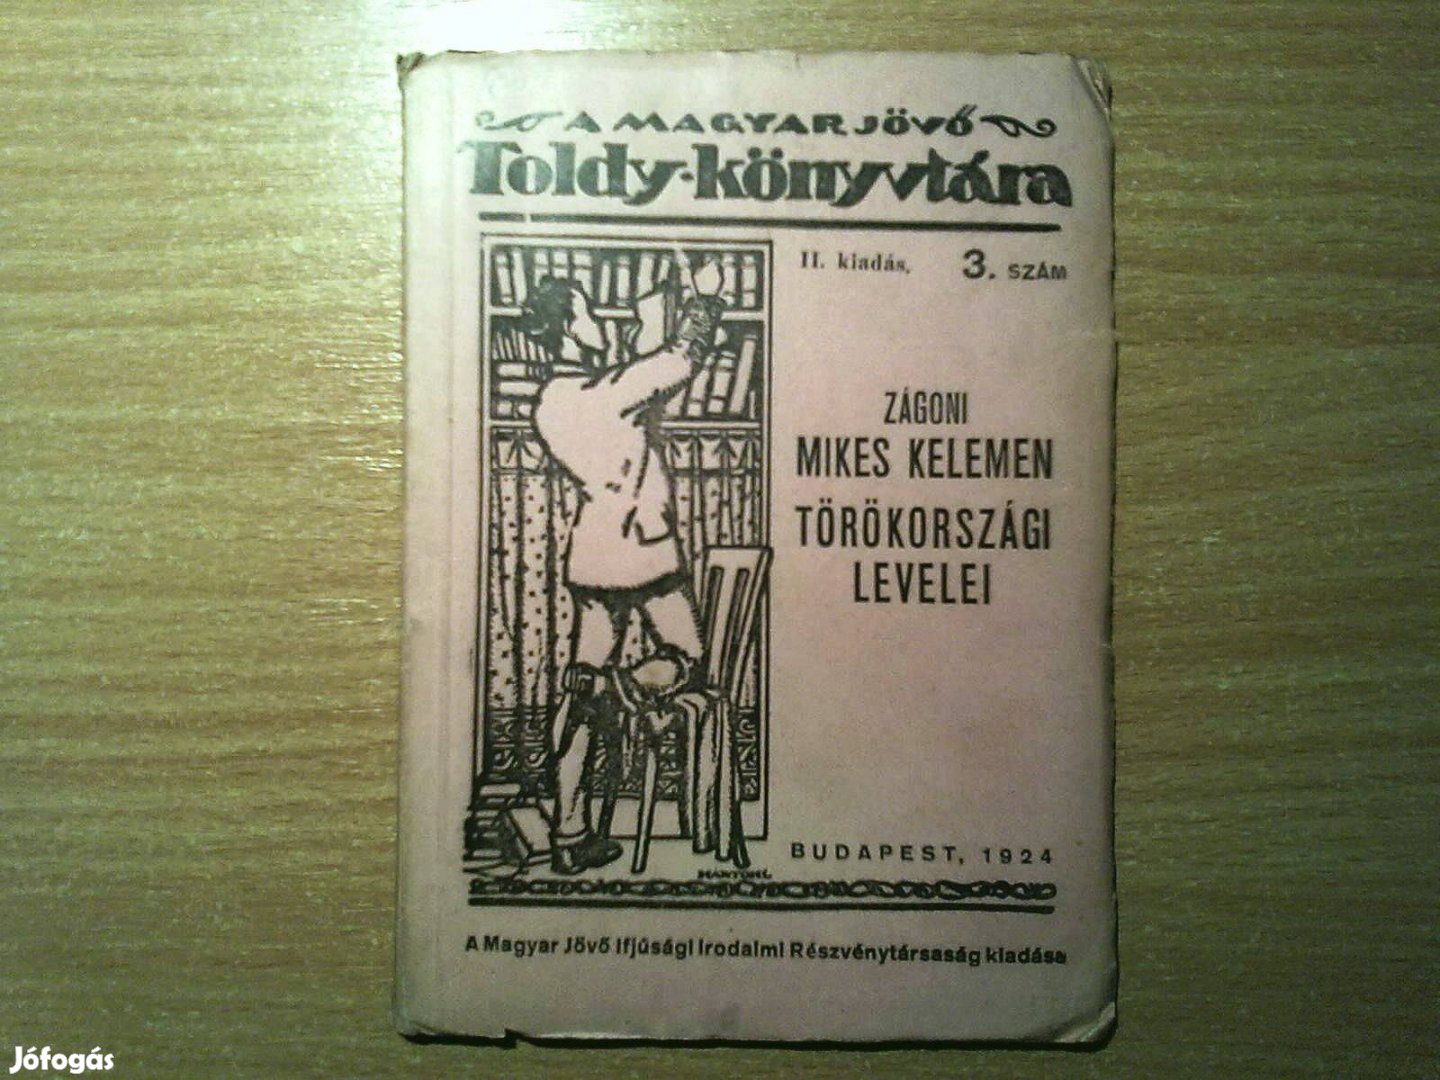 Zágoni Mikes Kelemen Törökországi Levelei (1924-es kiadás